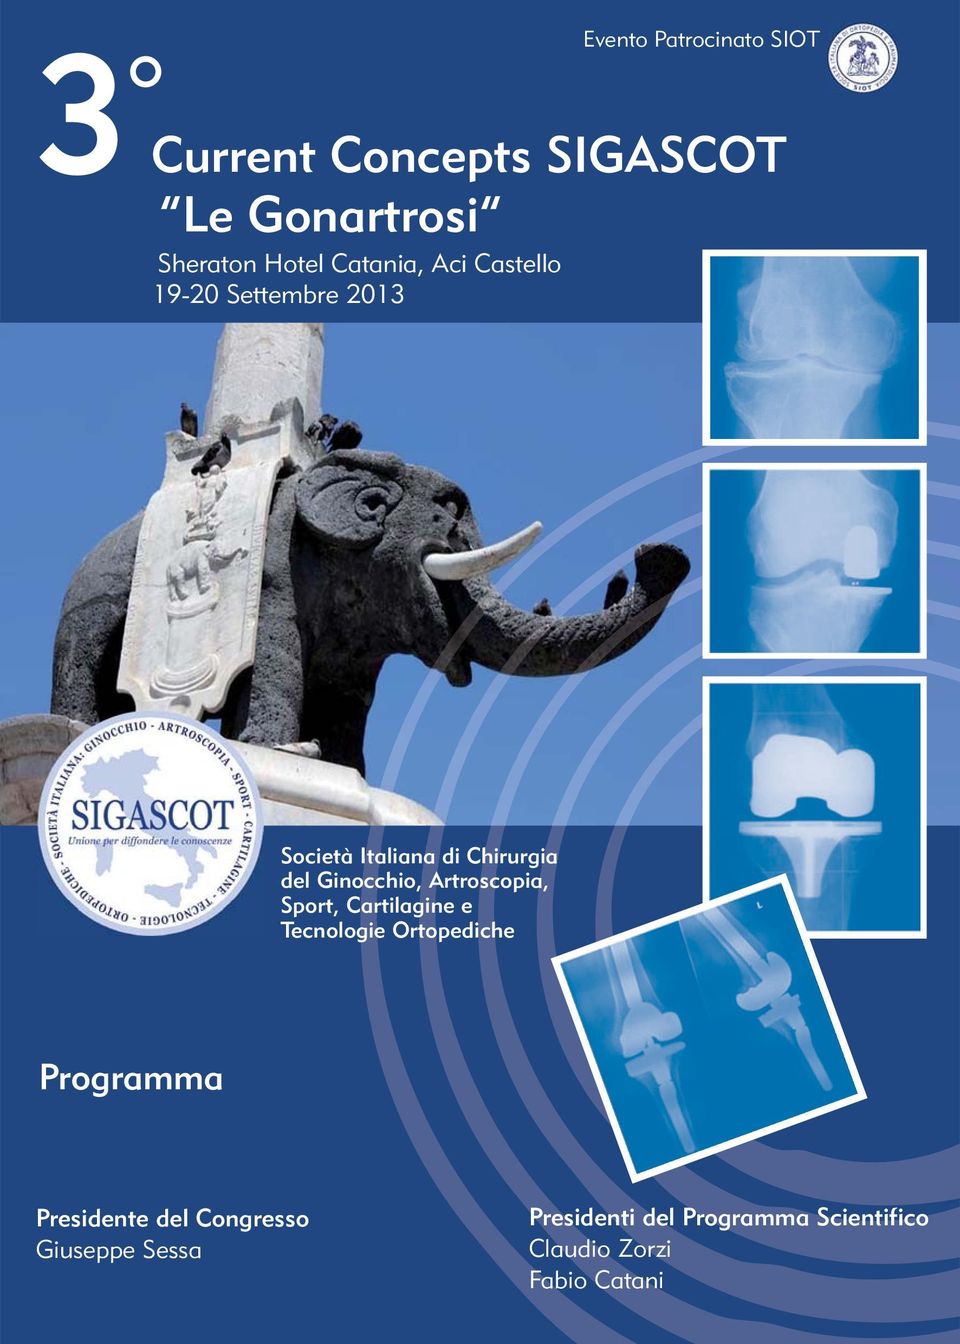 Ginocchio, Artroscopia, Sport, Cartilagine e Tecnologie Ortopediche Programma